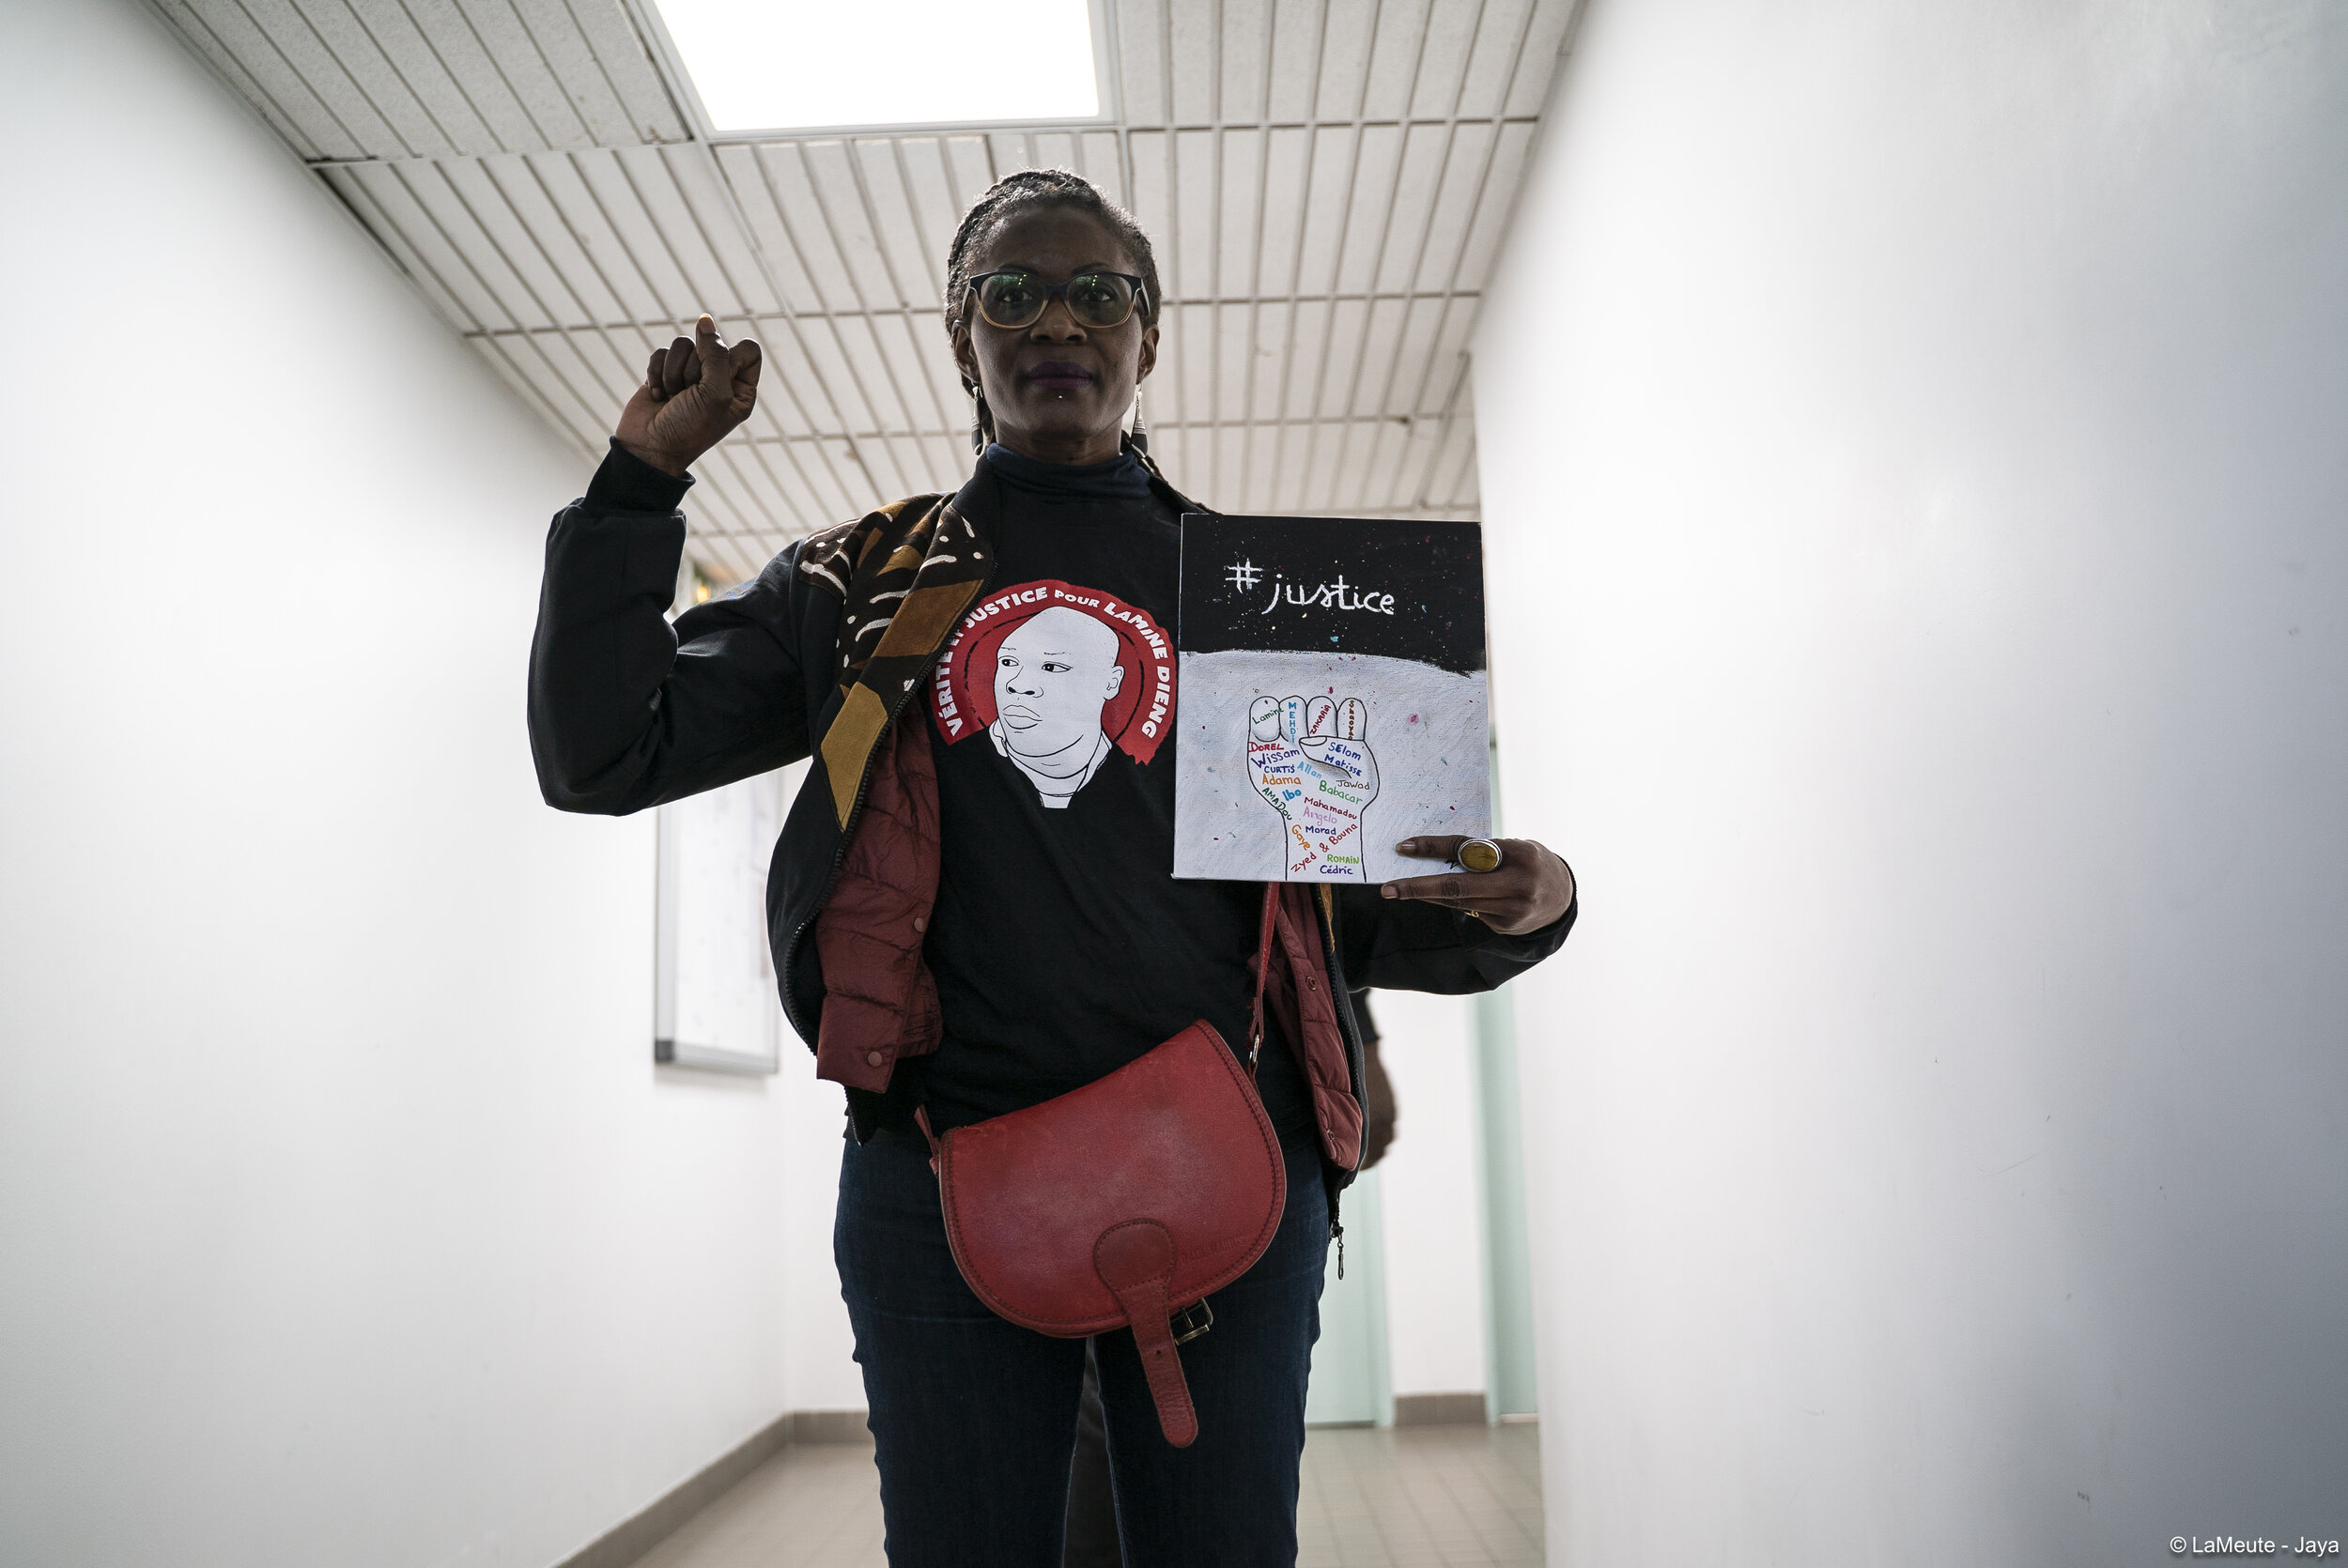   Fatou Dieng, soeur de Ramata Dieng qui a fondé le collectif Vies Volées en 2010 est présente aujourd’hui. Dans sa main gauche, le dessin combattif d’une petite fille de Rennes qu’on vient de lui transmettre. Fatou rappelle la mort de son frère Lami